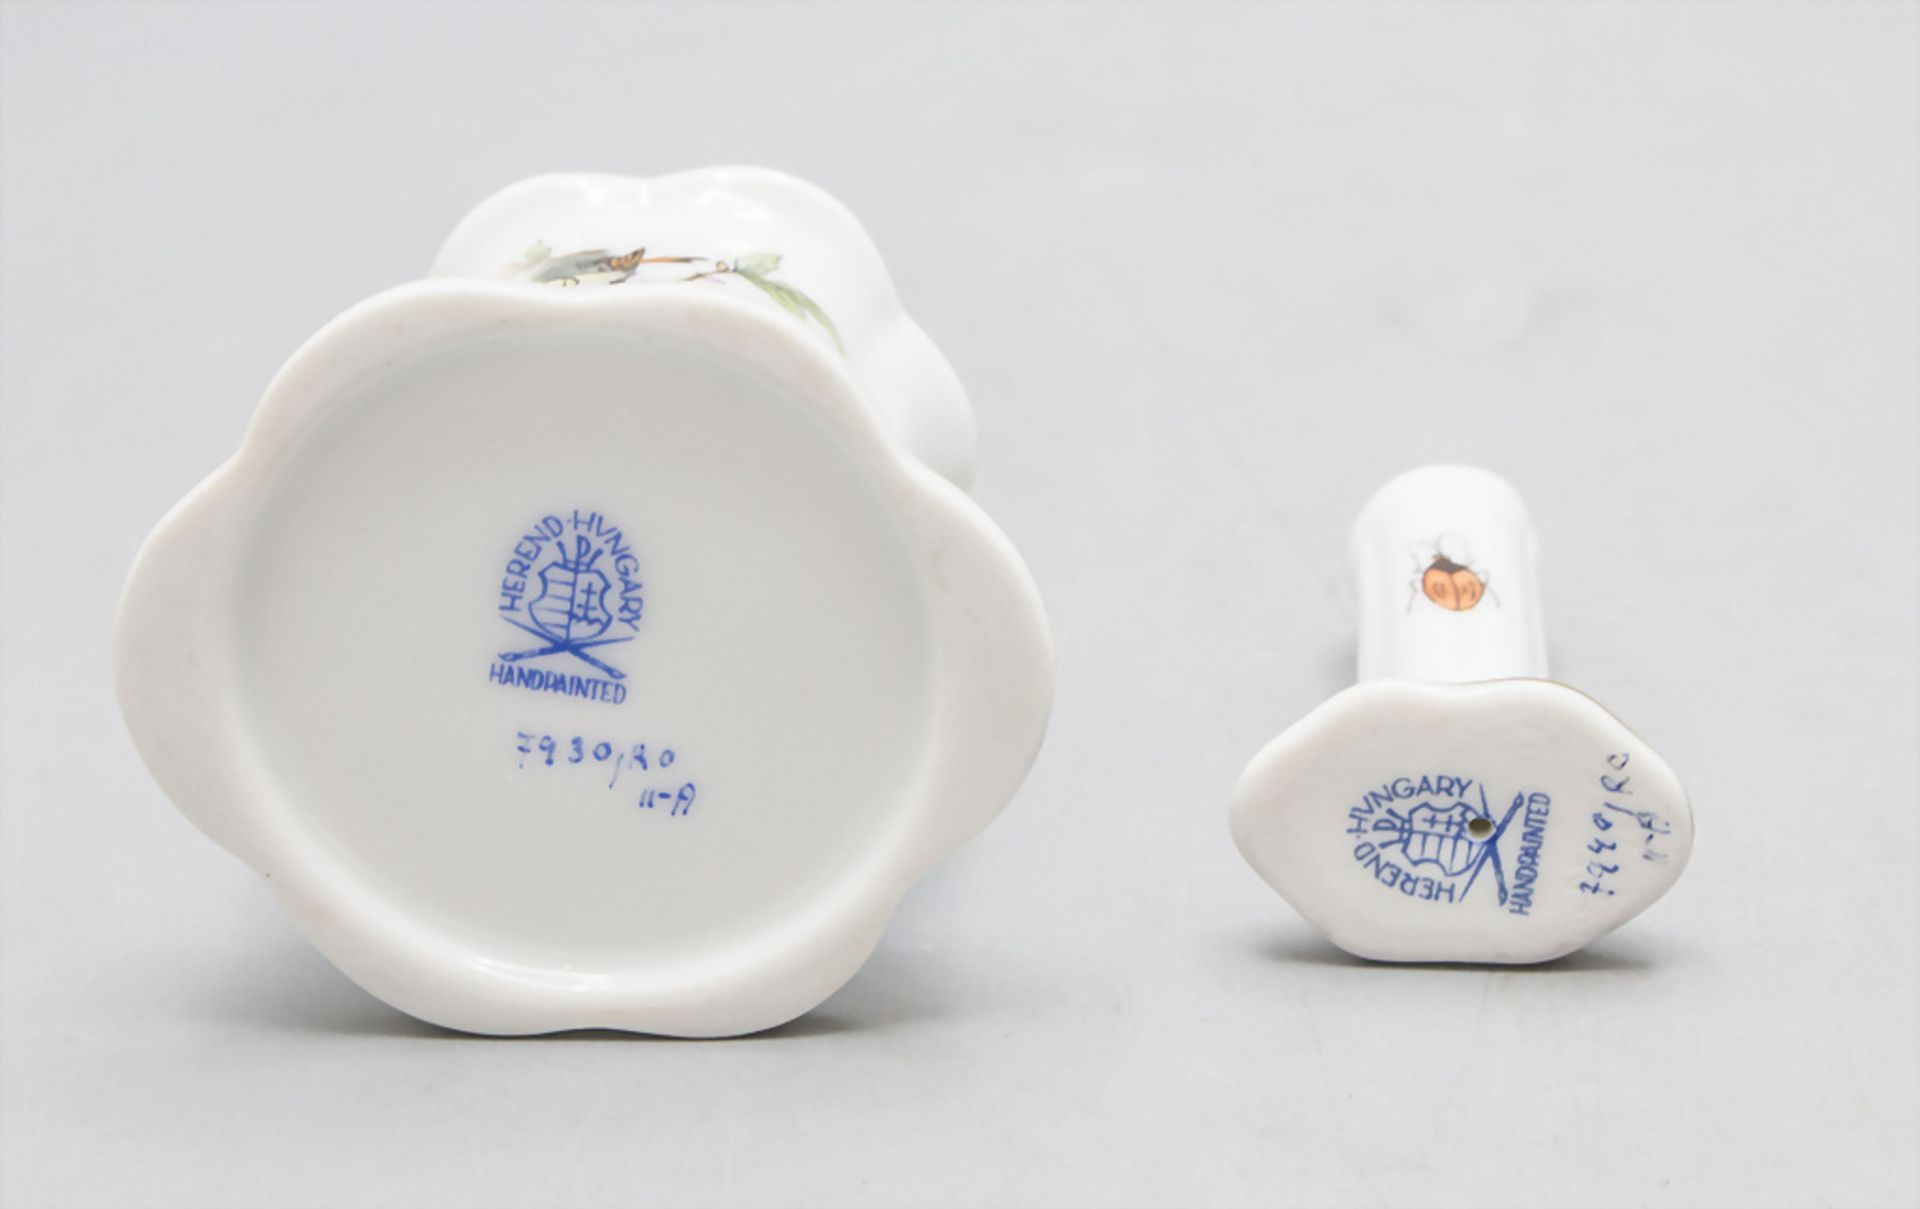 Porzellan Raucherset / A porcelain smoker set, Herend, 20. Jh. - Bild 9 aus 10